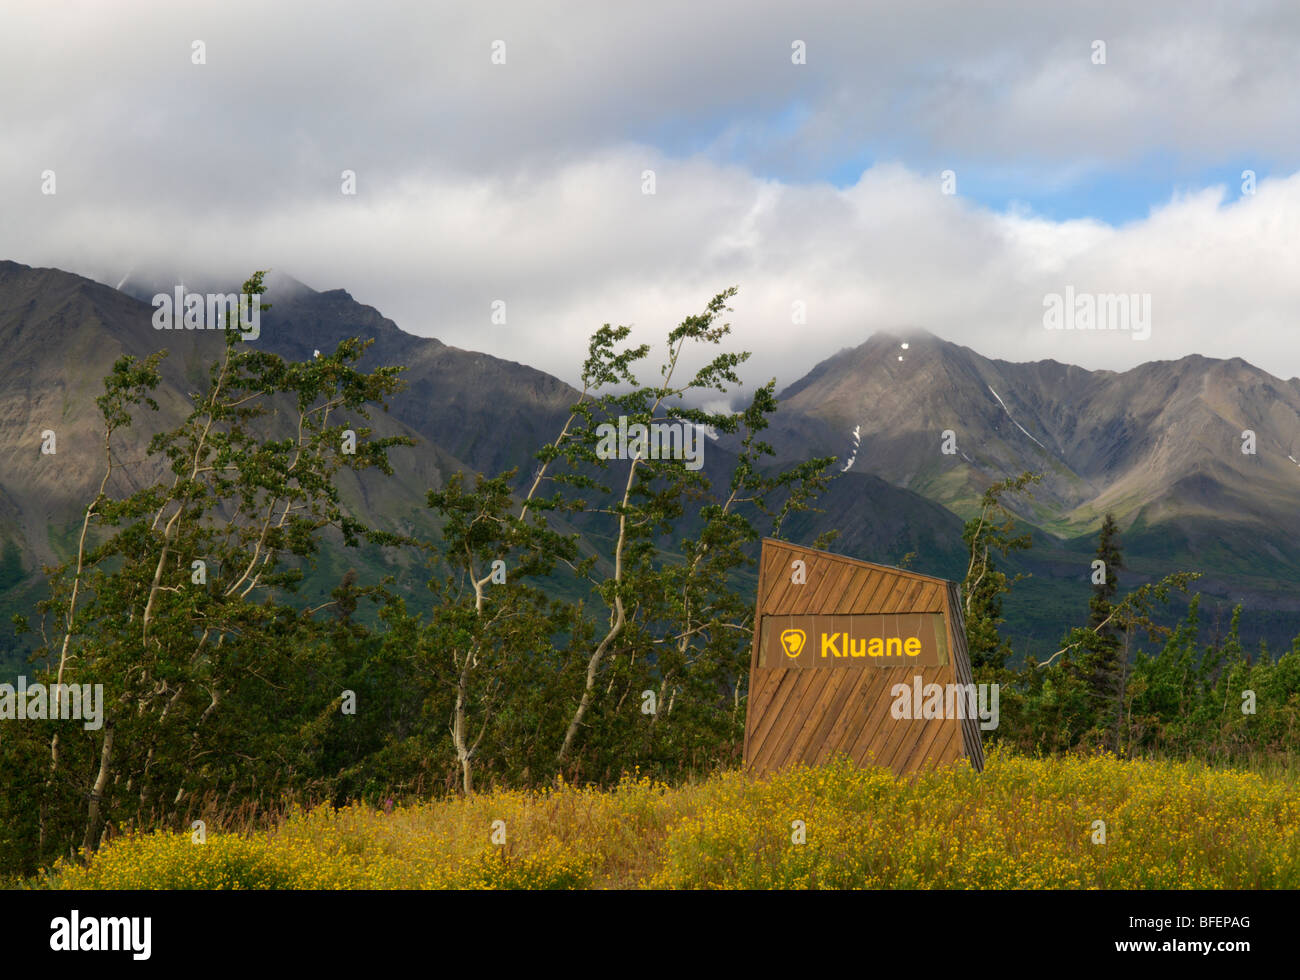 Signe, la réserve de parc national Kluane, Yukon Territory, Canada Banque D'Images